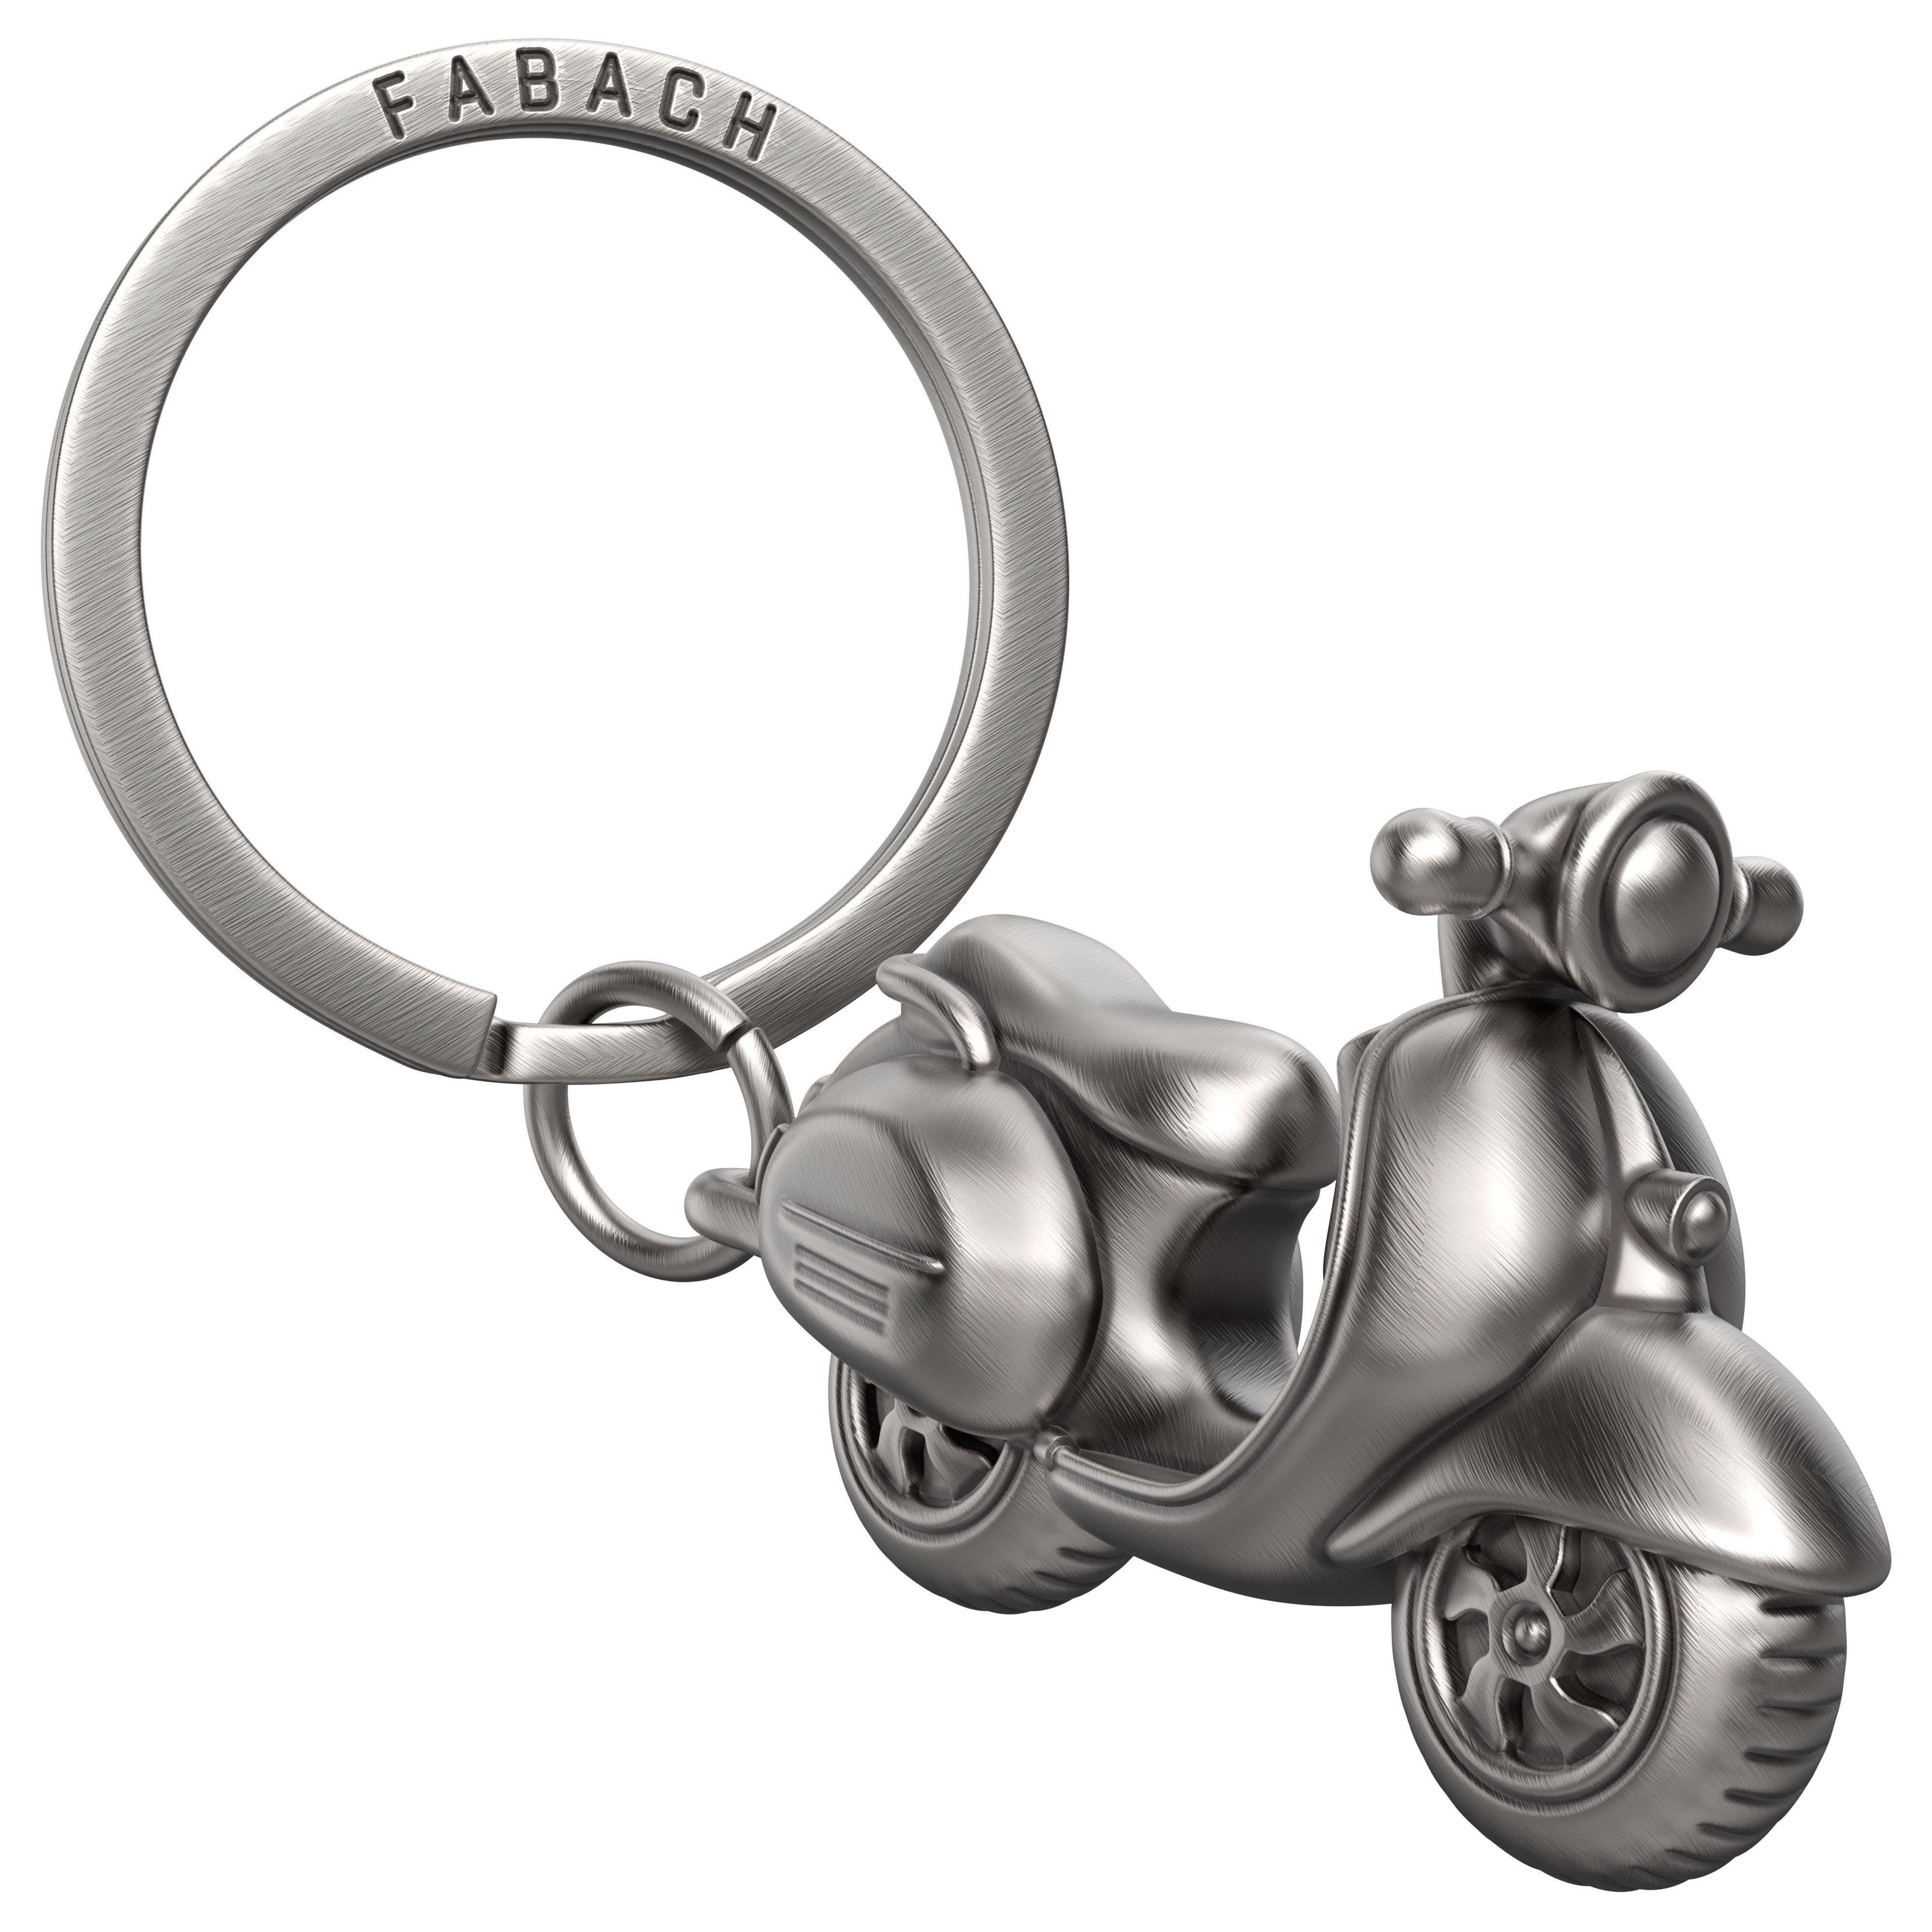 FABACH Schlüsselanhänger "Vespa" - Geschenk für Rollerfahrer und Vespa Fans Antique Silber